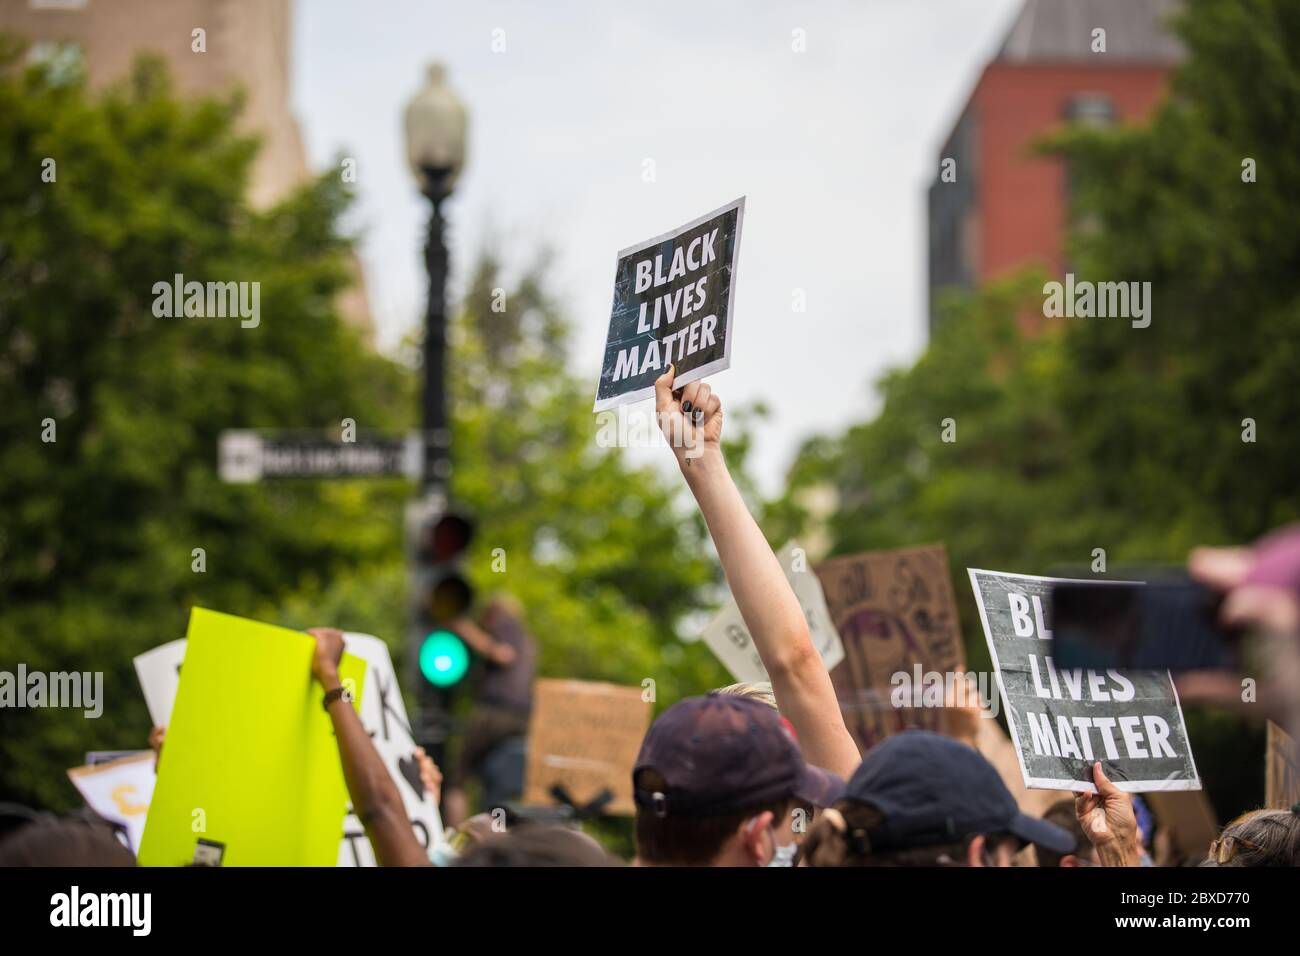 Washington, D.C., USA. Juni 2020. Protestierende versammeln sich zu einer Black Lives Matter Demonstration in Washington, D.C. Dies war die größte Versammlung von Protestierenden in der Stadt seit dem Tod von George Floyd. Credit Nicole Glass / Alamy Live News. Stockfoto